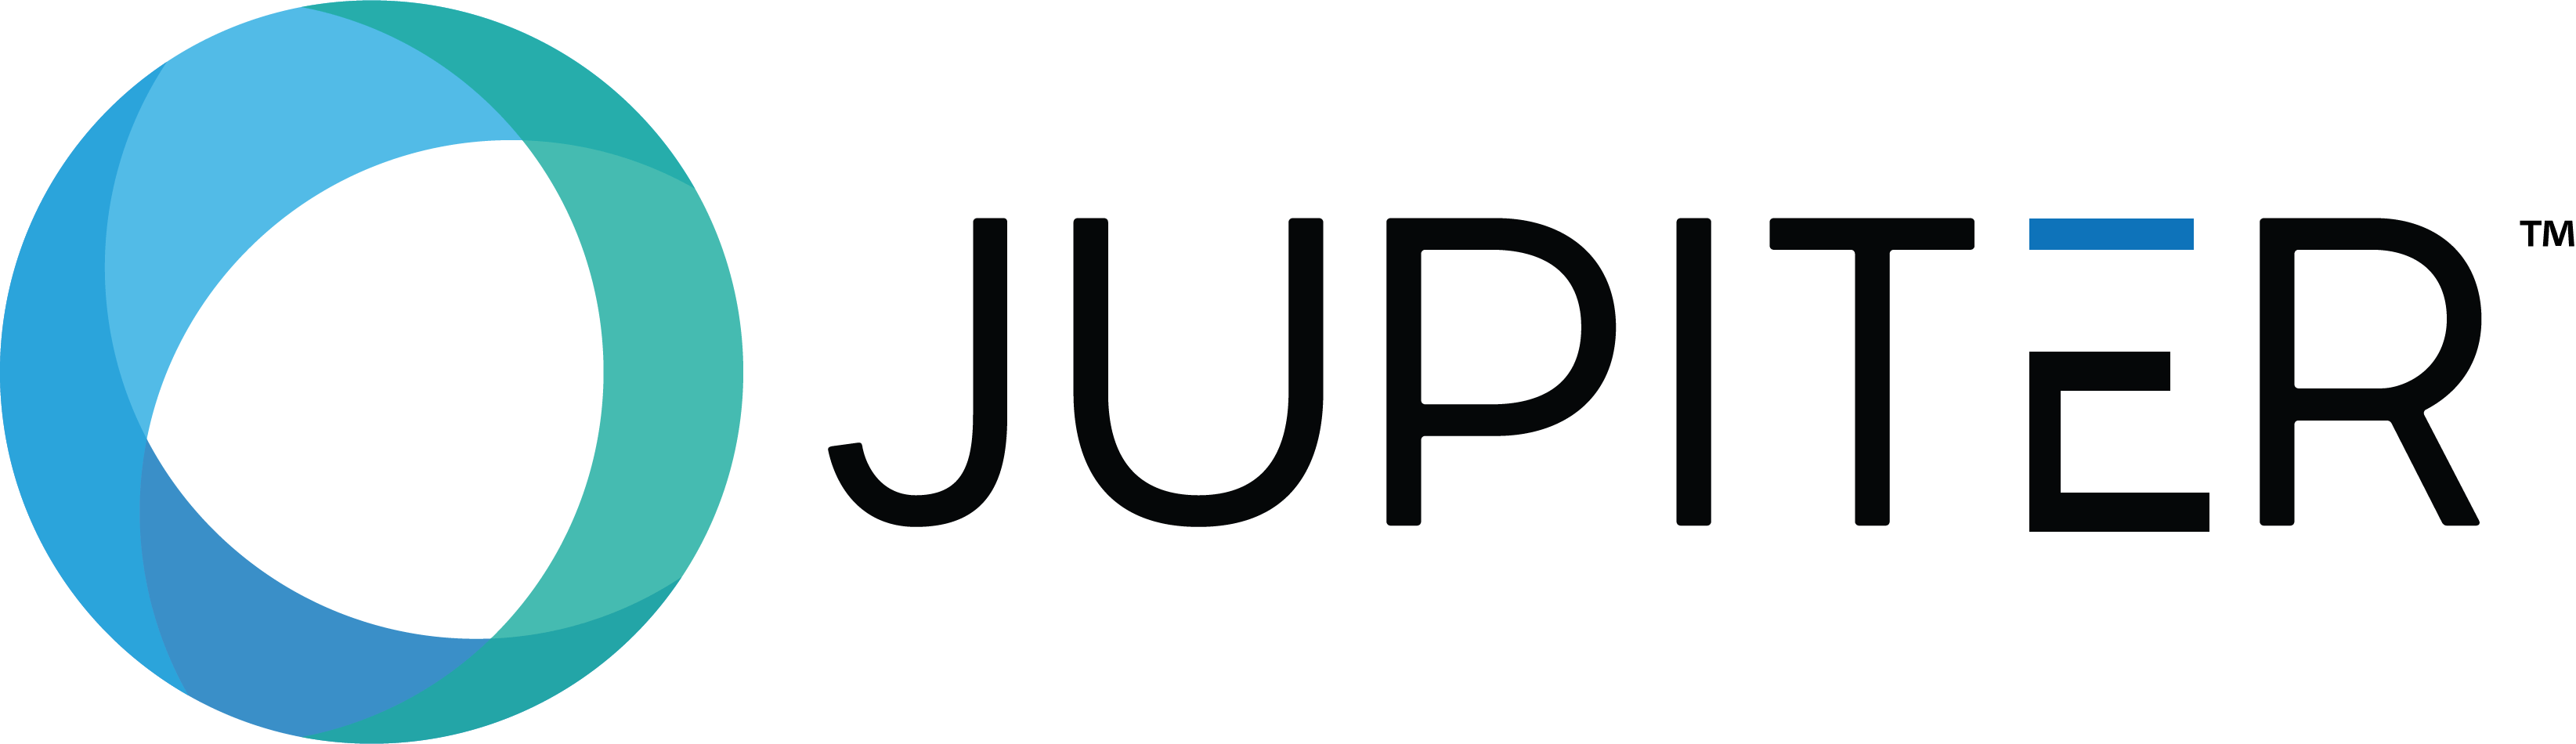 Jupiter Logo - Jupiter Intelligence, Inc.